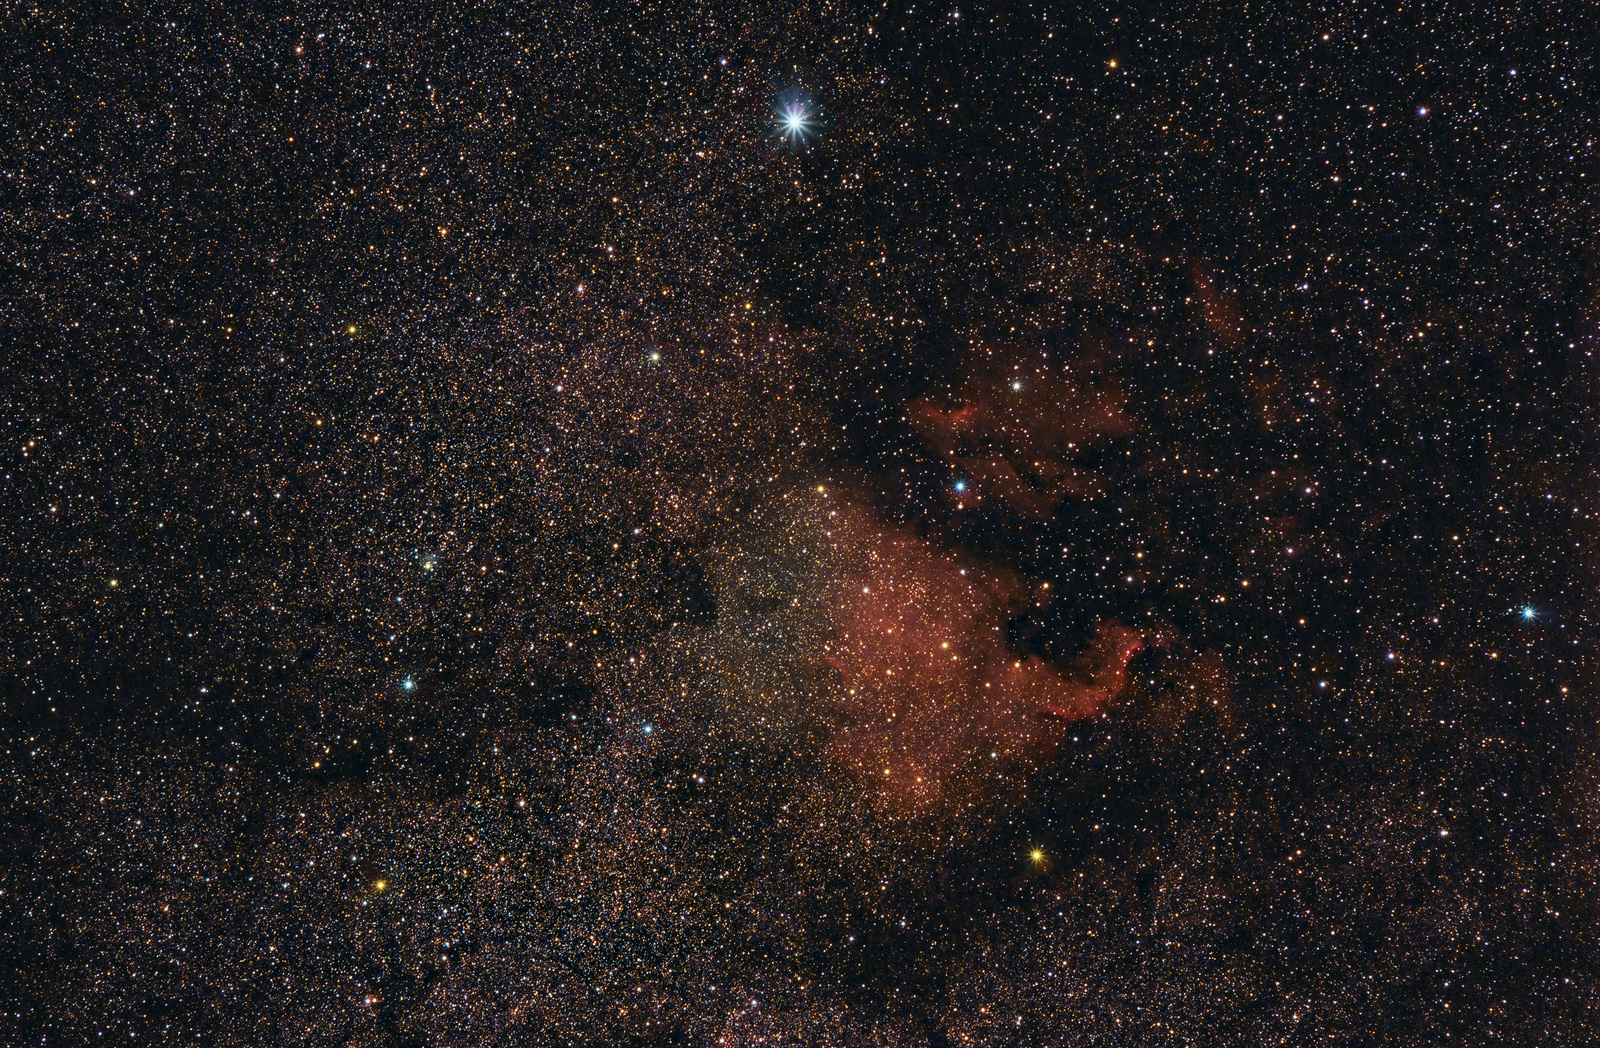 NGC_7000_236x90s.thumb.jpg.deb39d4e6ffbc133c4ab8ddd0cbcc1ce.jpg